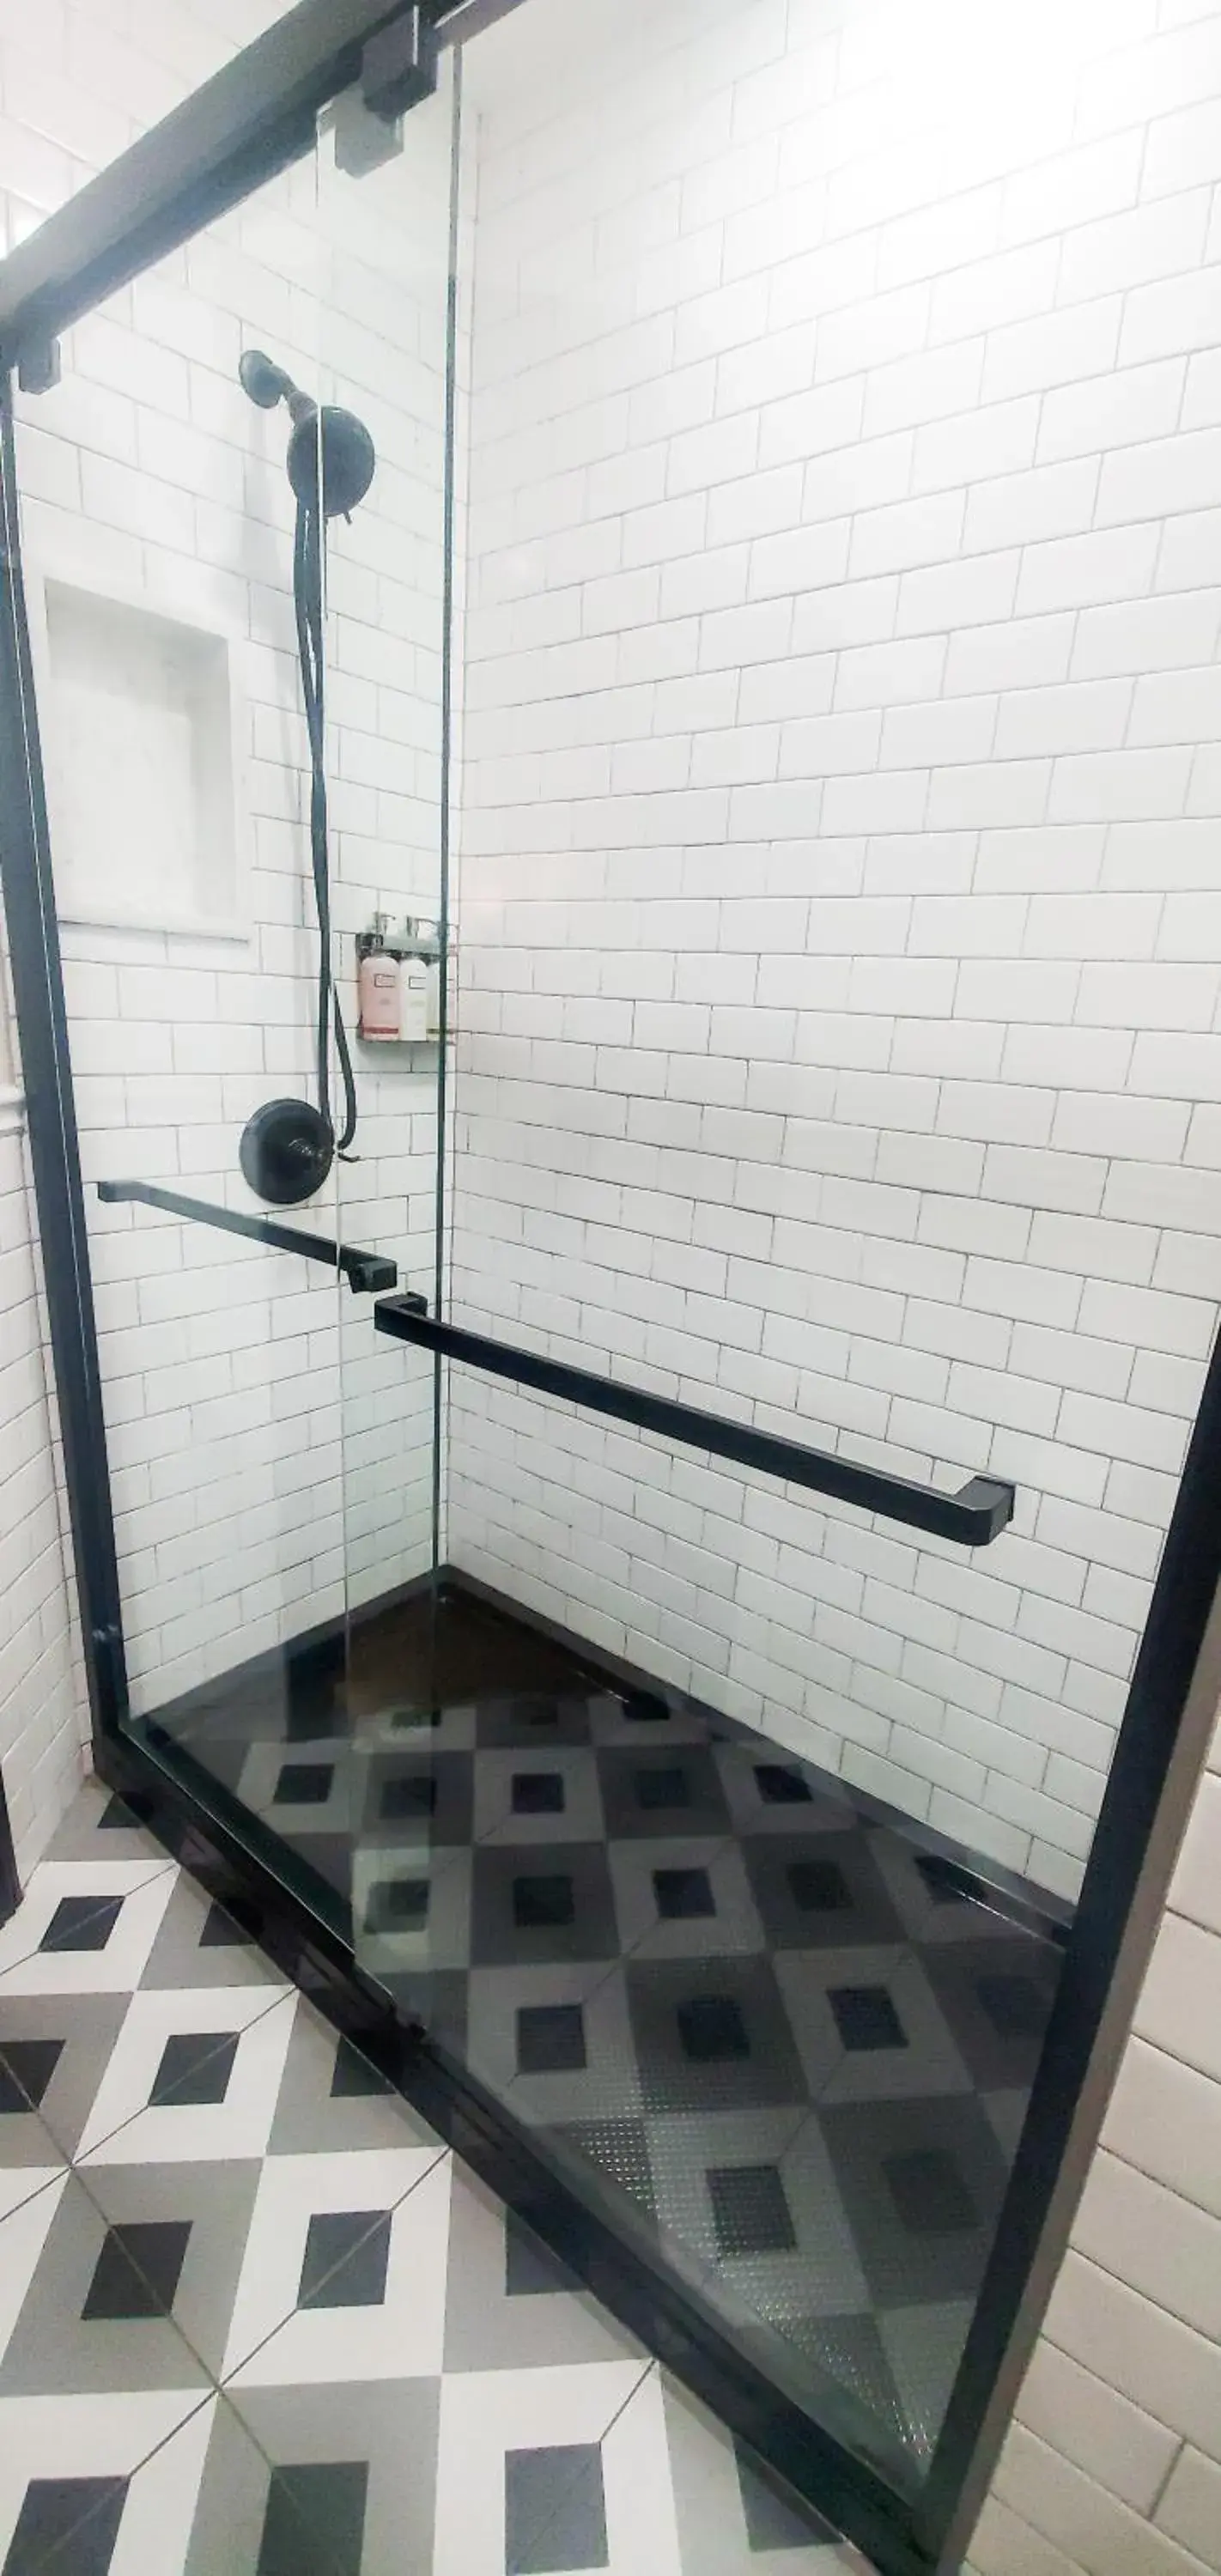 Bathroom in Amsterdam Hostel